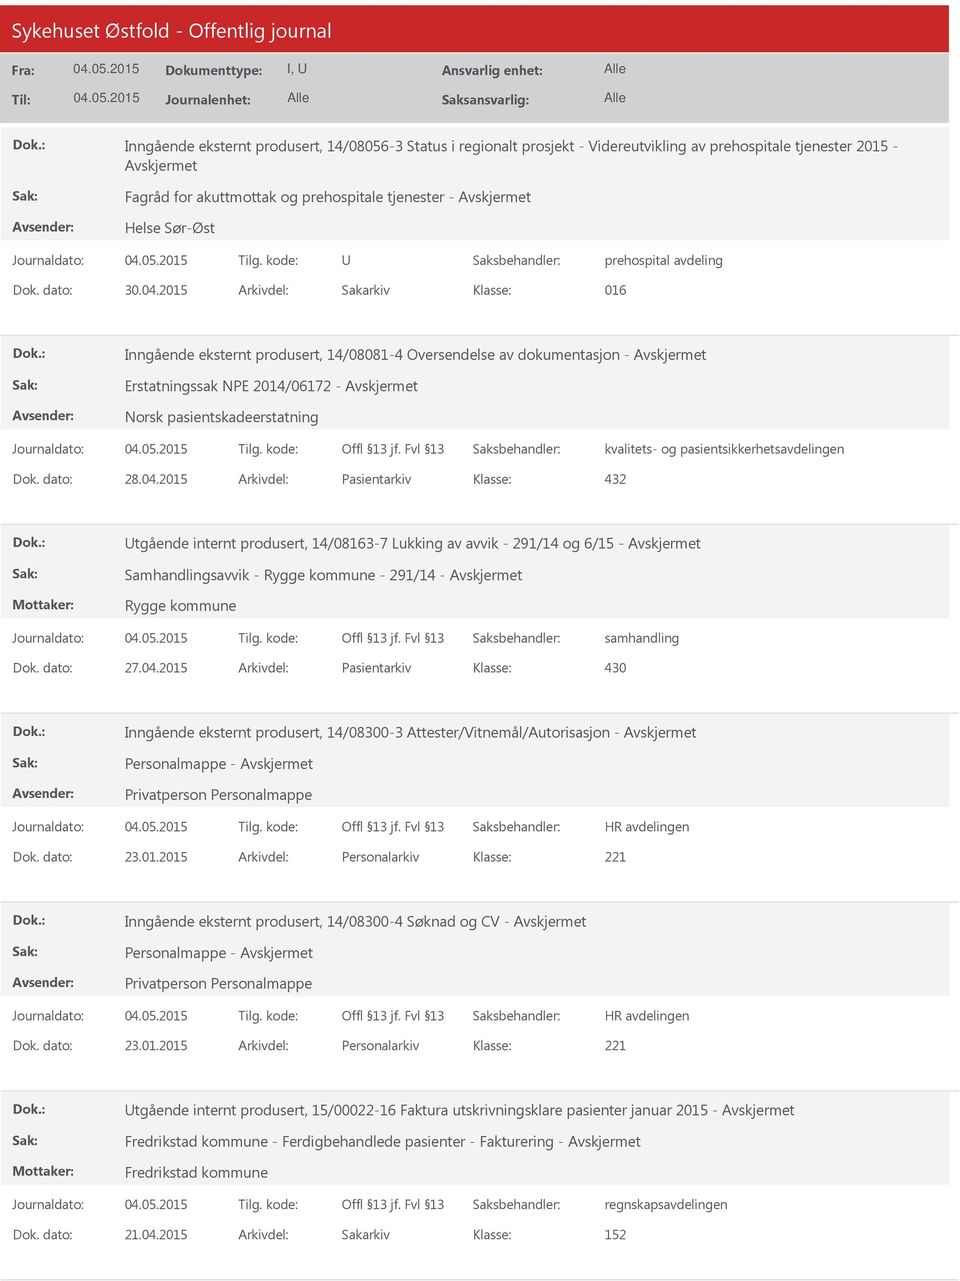 2015 Arkivdel: Sakarkiv 016 Inngående eksternt produsert, 14/08081-4 Oversendelse av dokumentasjon - Erstatningssak NPE 2014/06172 - Norsk pasientskadeerstatning kvalitets- og